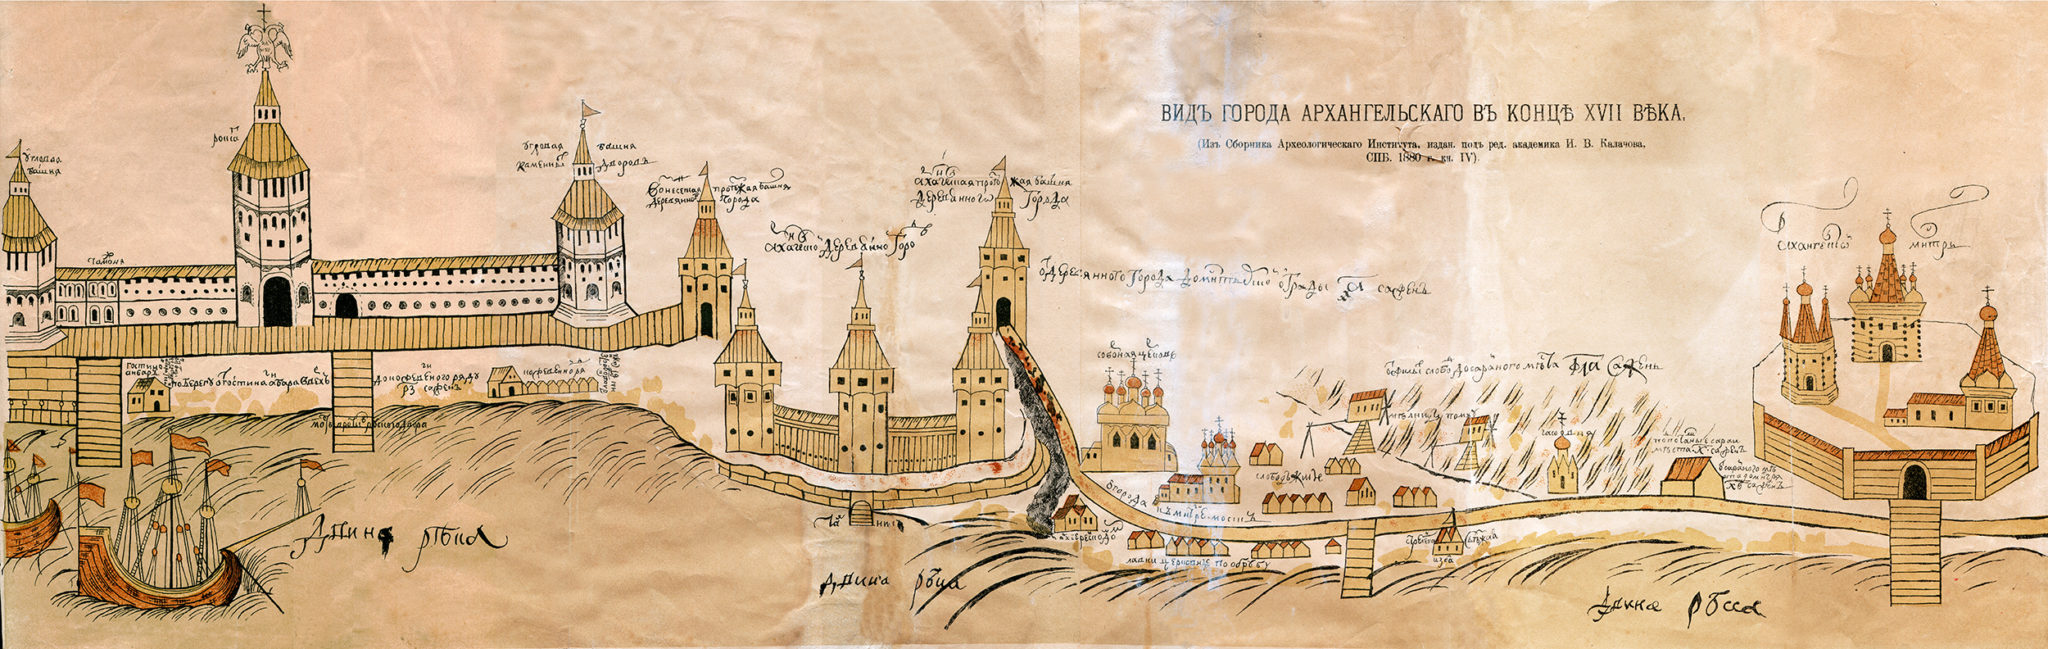 Порт Архангельска в 17 веке